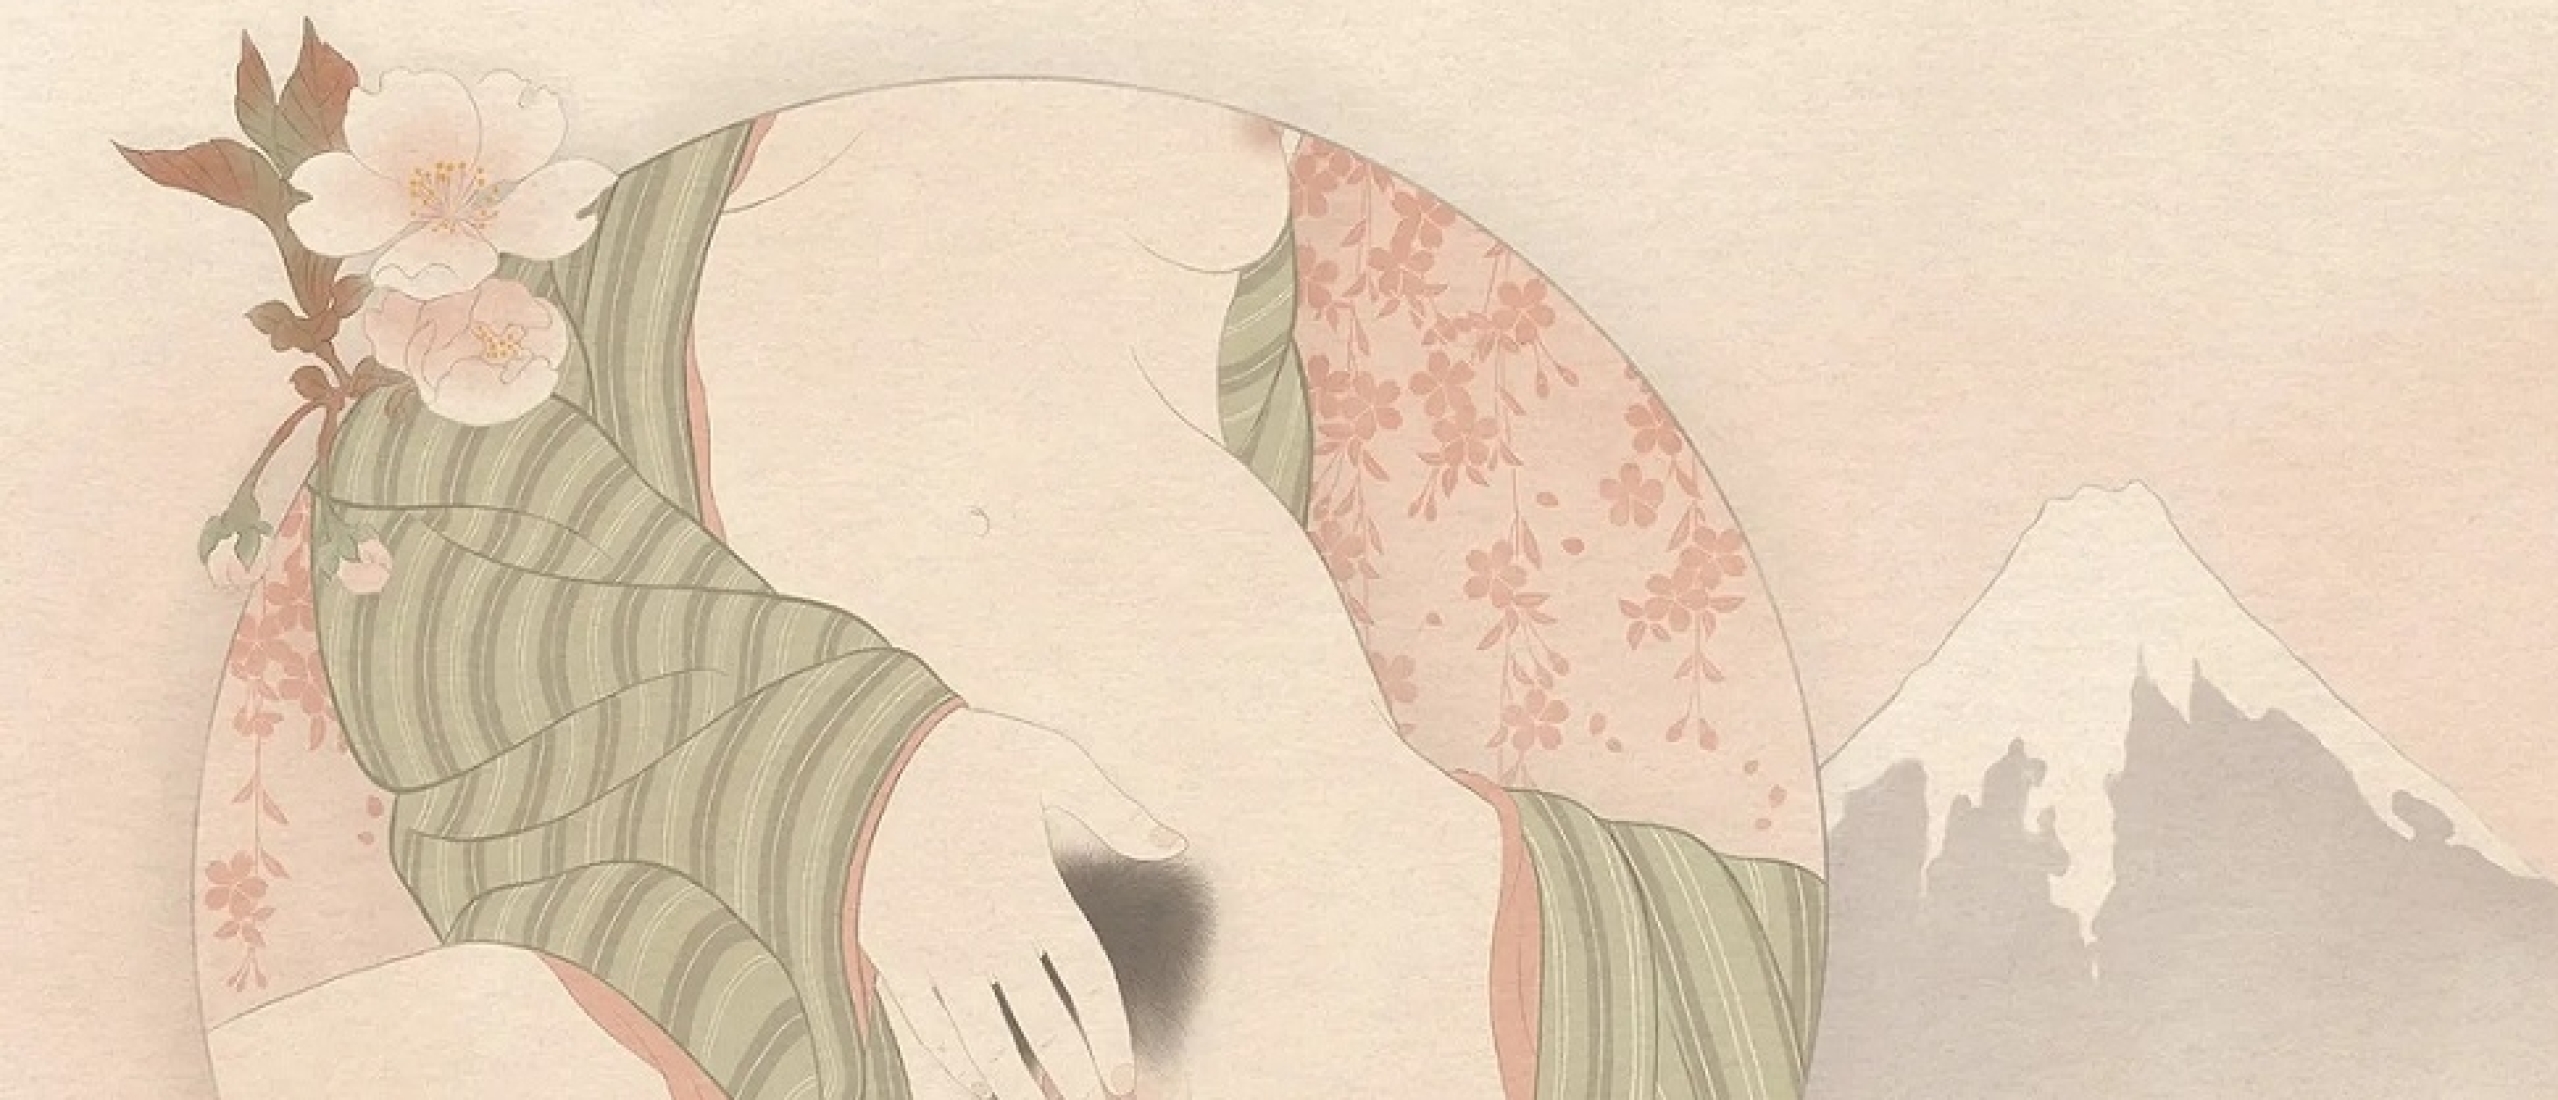 Senju Shunga's Erotic Ode to Hokusai's Fuji Series